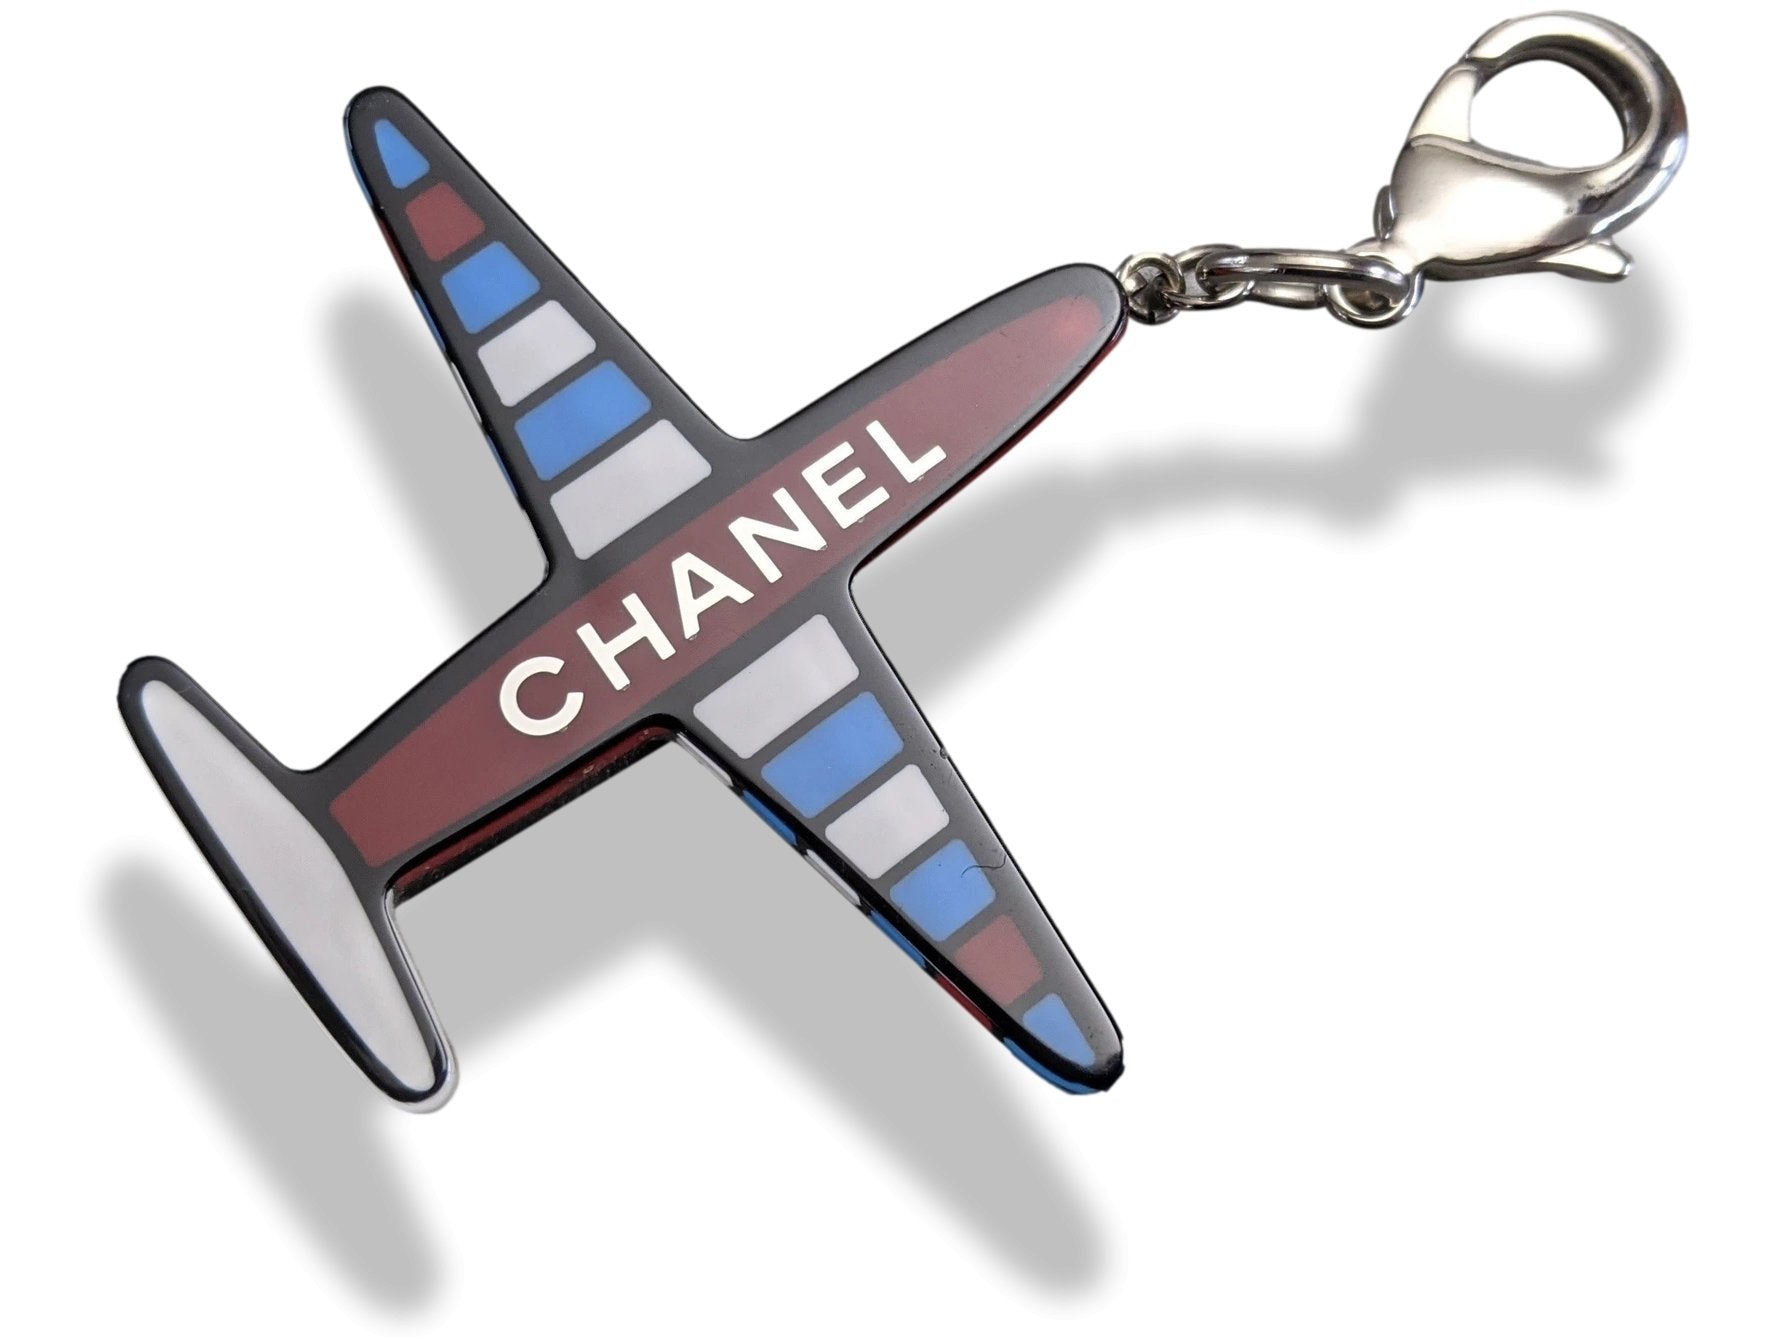 Chanel Keychain -  Canada